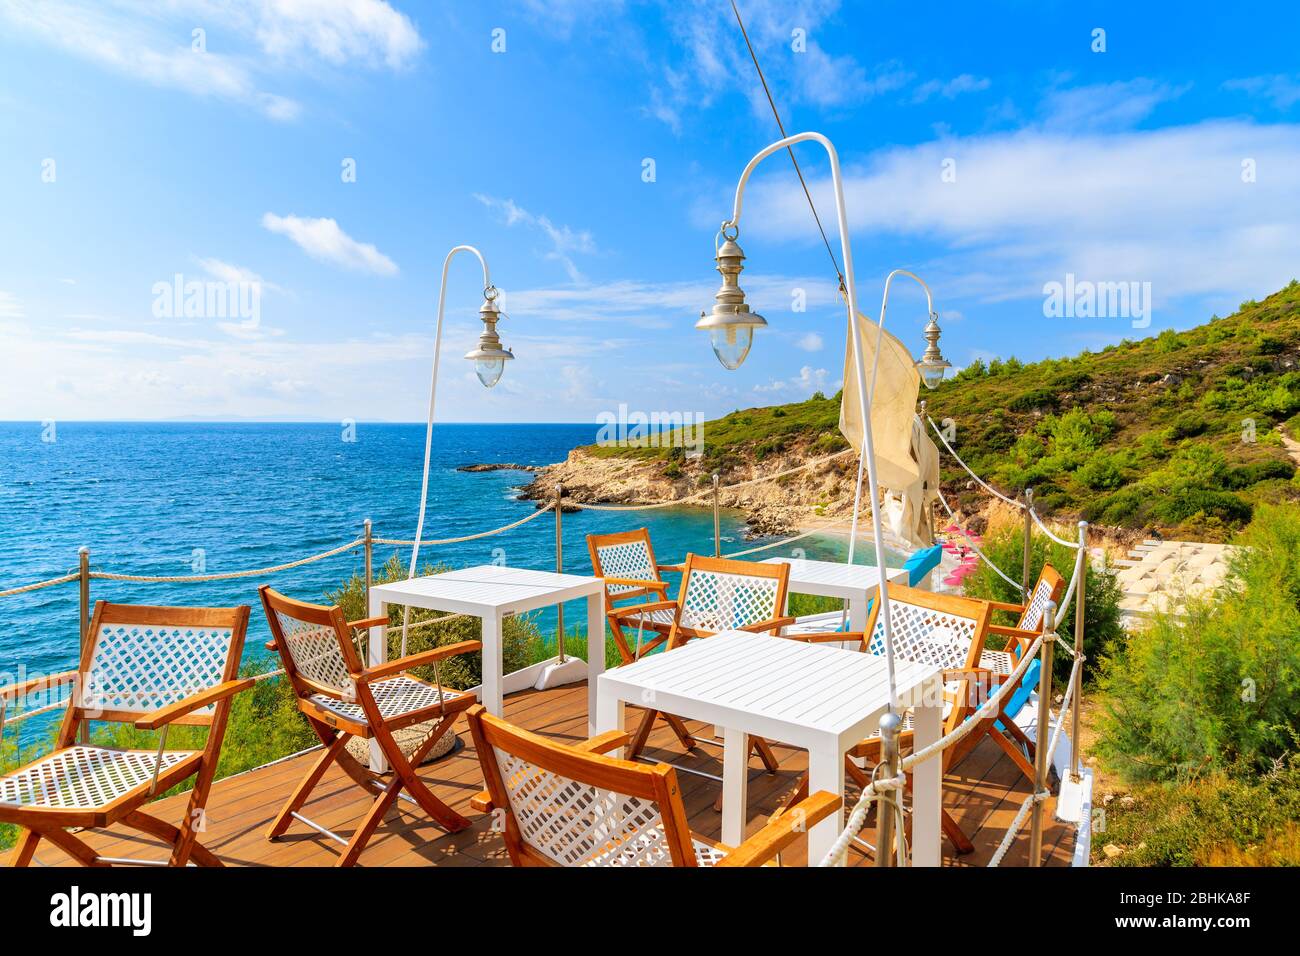 Taverna greca sul ponte tradizionale barca a vela sulla costa dell'isola di Samos, Mar Egeo, Grecia Foto Stock